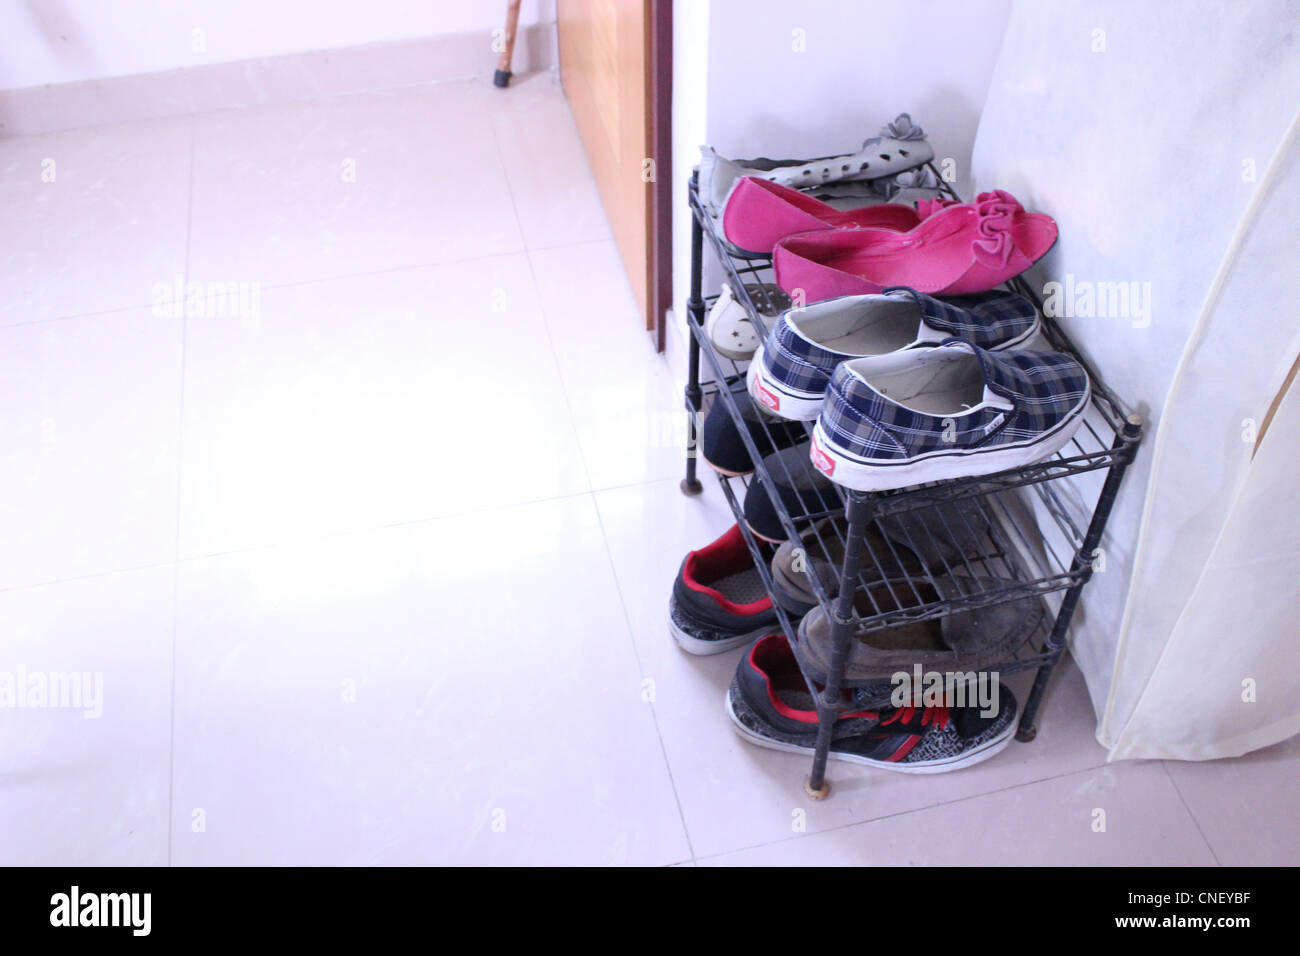 Compact scarpa rack in una tipica camera piccola Foto Stock